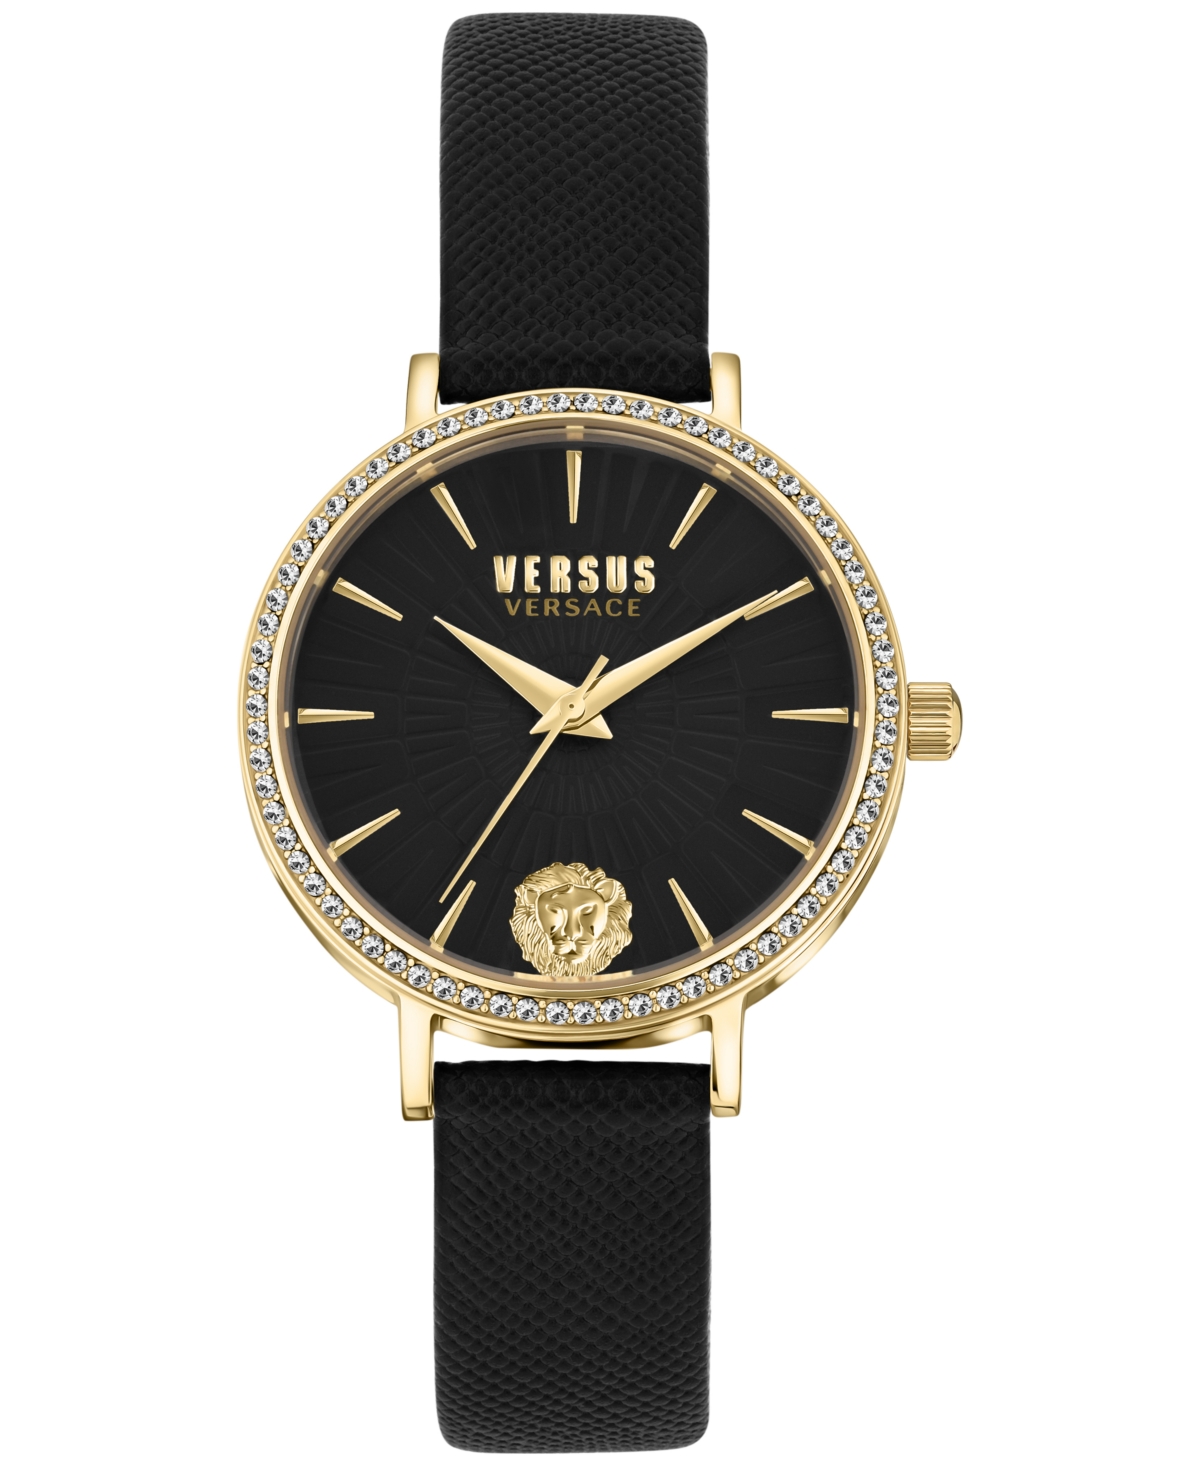 Versus Women's Mar Vista Black Leather Strap Watch 34mm In Gold